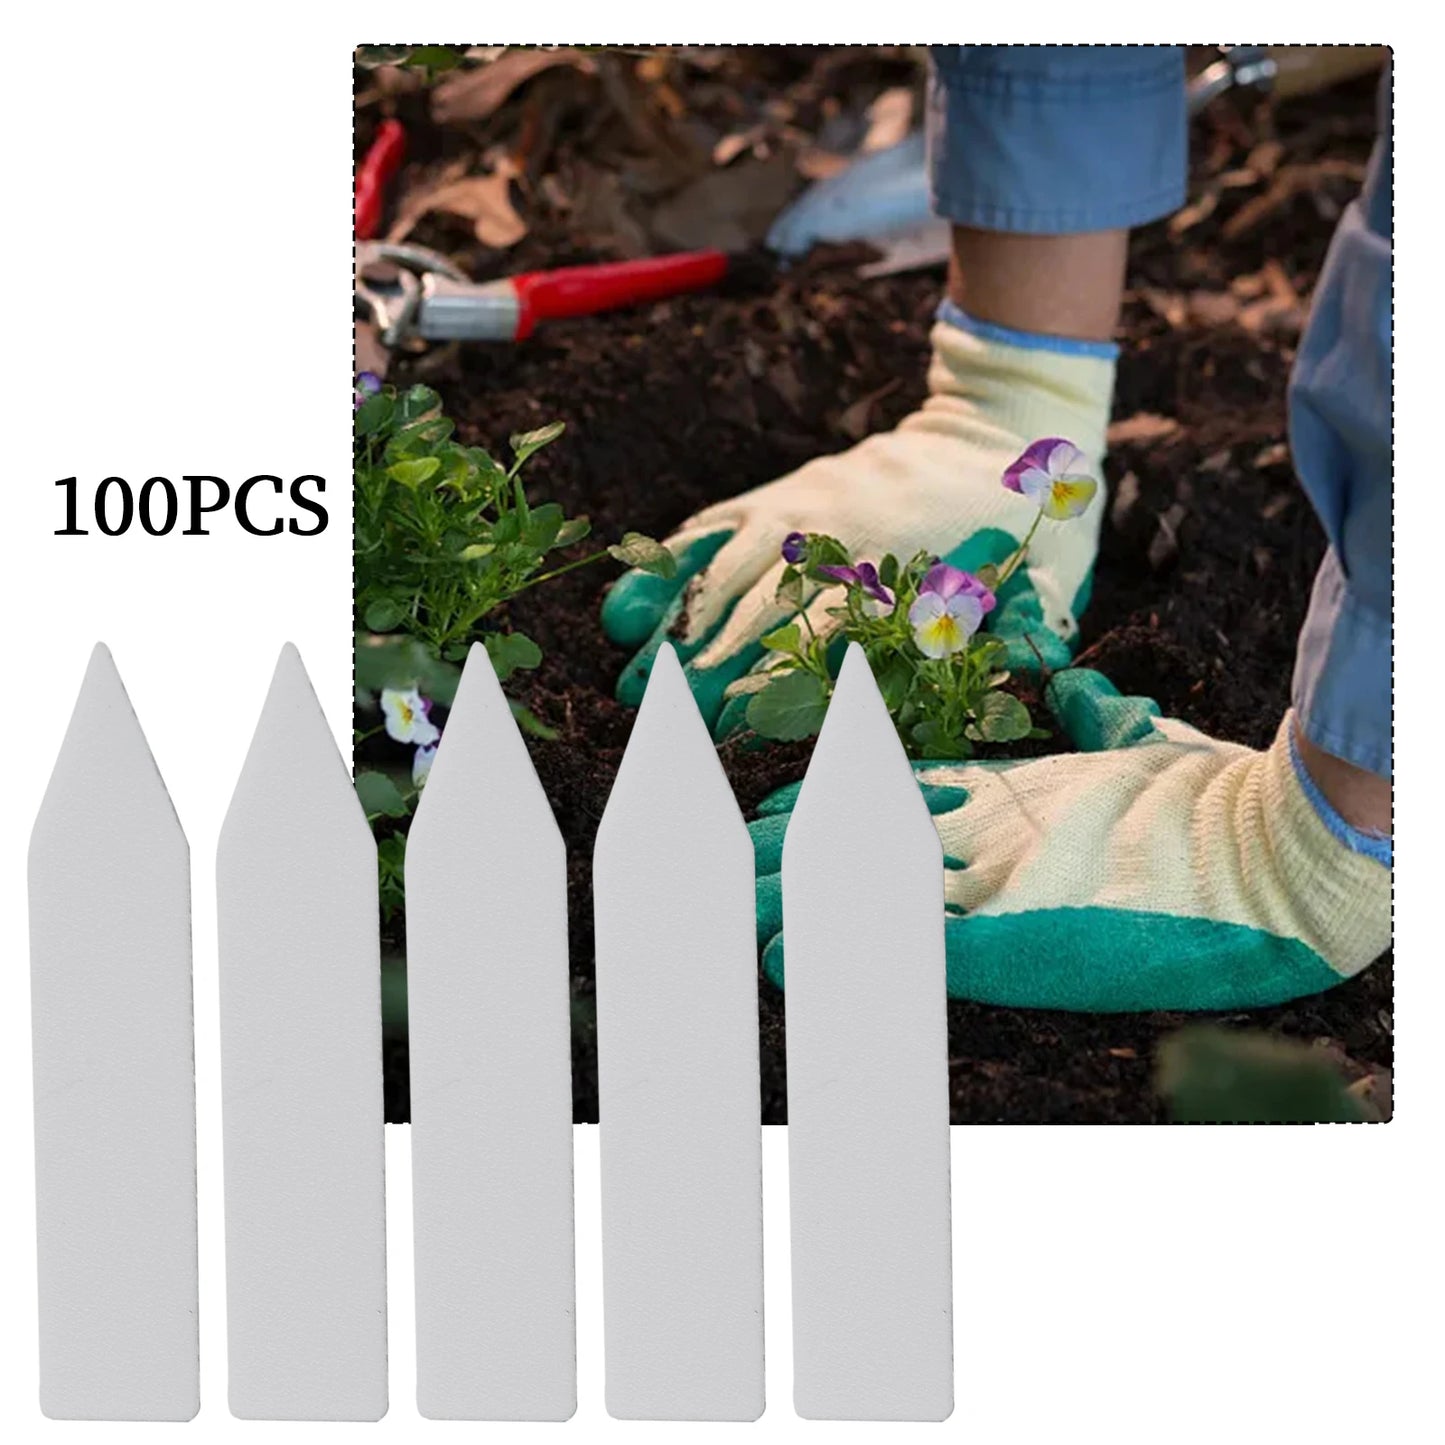 100pcs Set Plant Labels Flower Pots Plastic Plant Tags